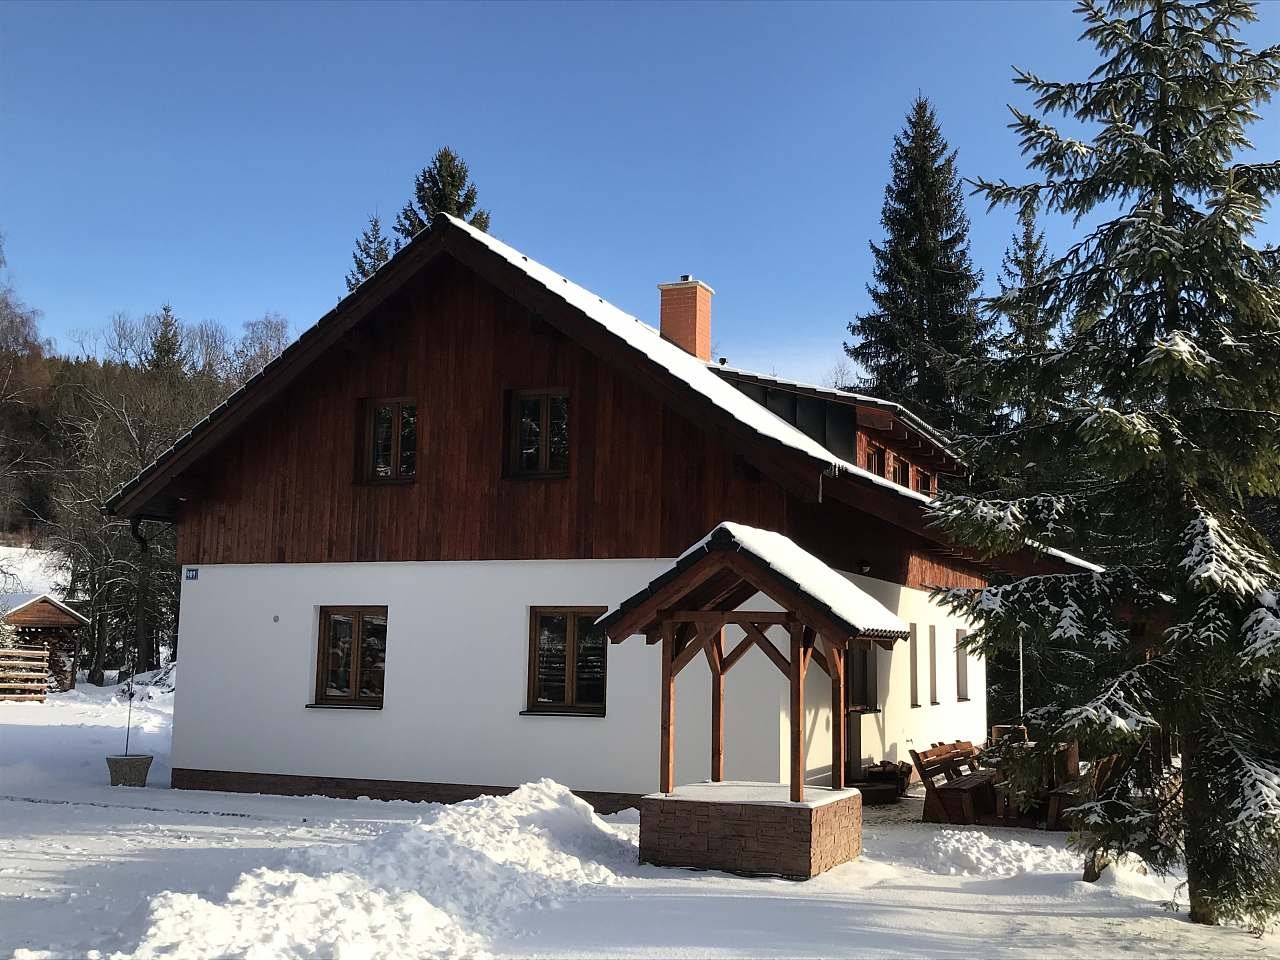 Cottage in de winter